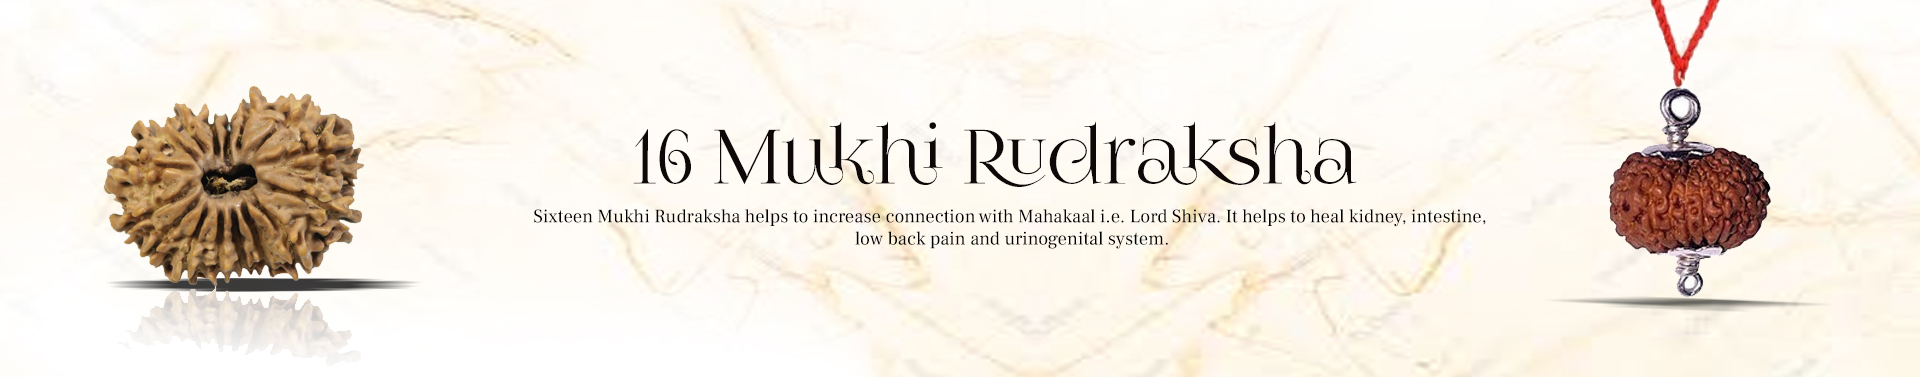 16 Mukhi Rudraksha 